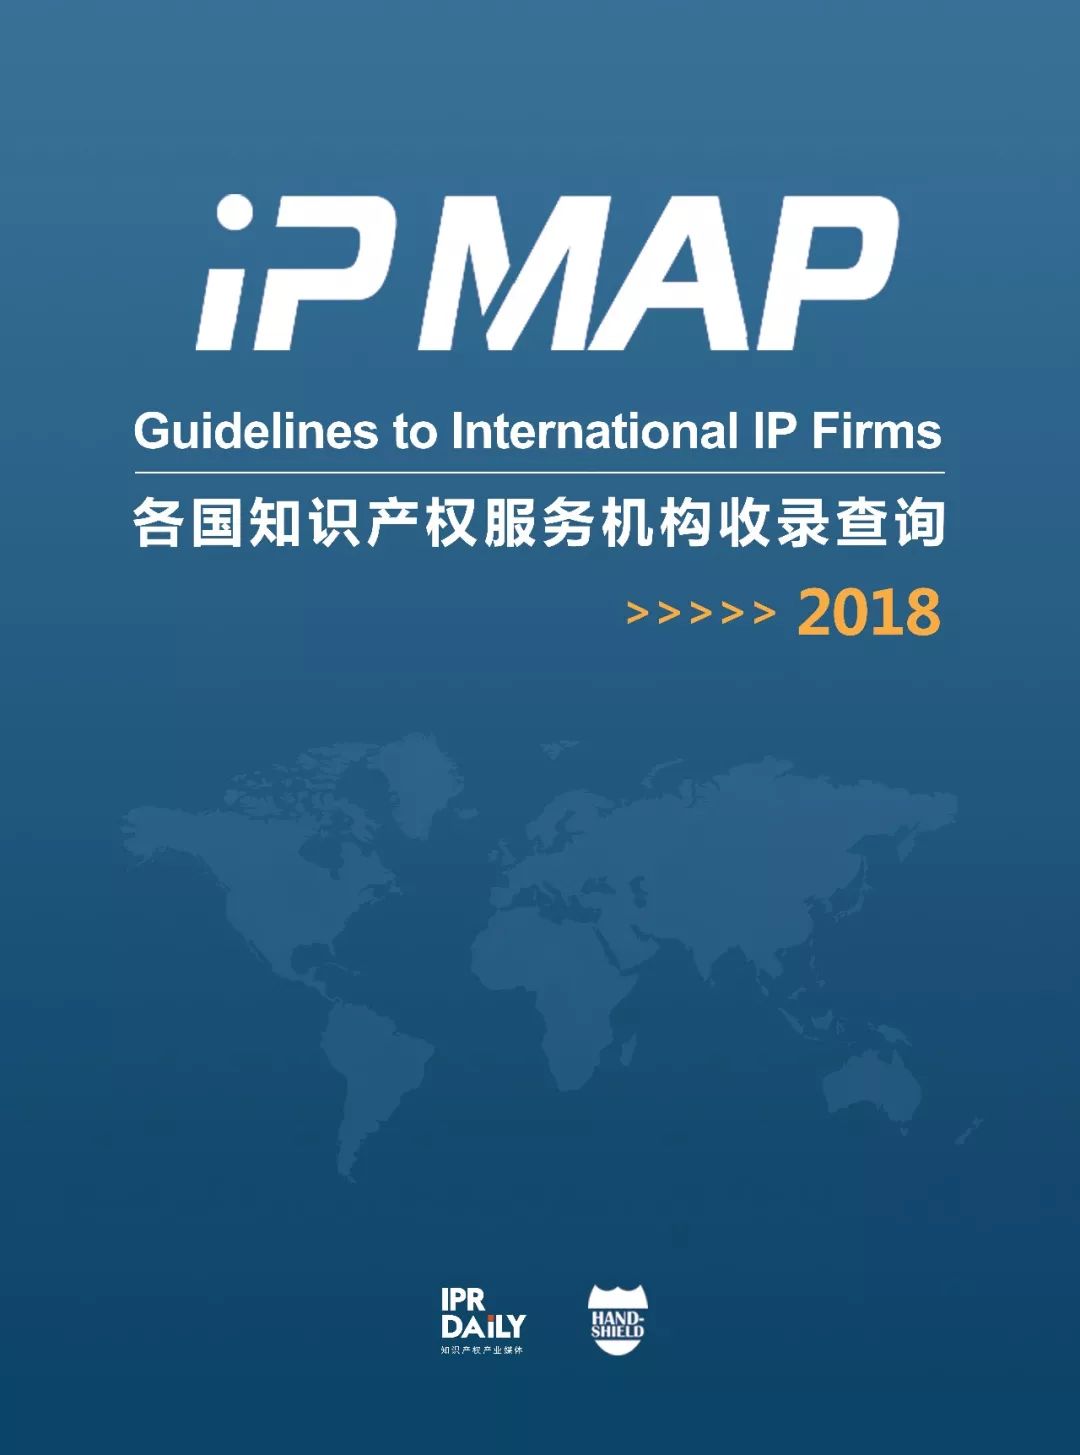 新名片！《“IP MAP”各国知识产权服务机构收录查询》邀您参与